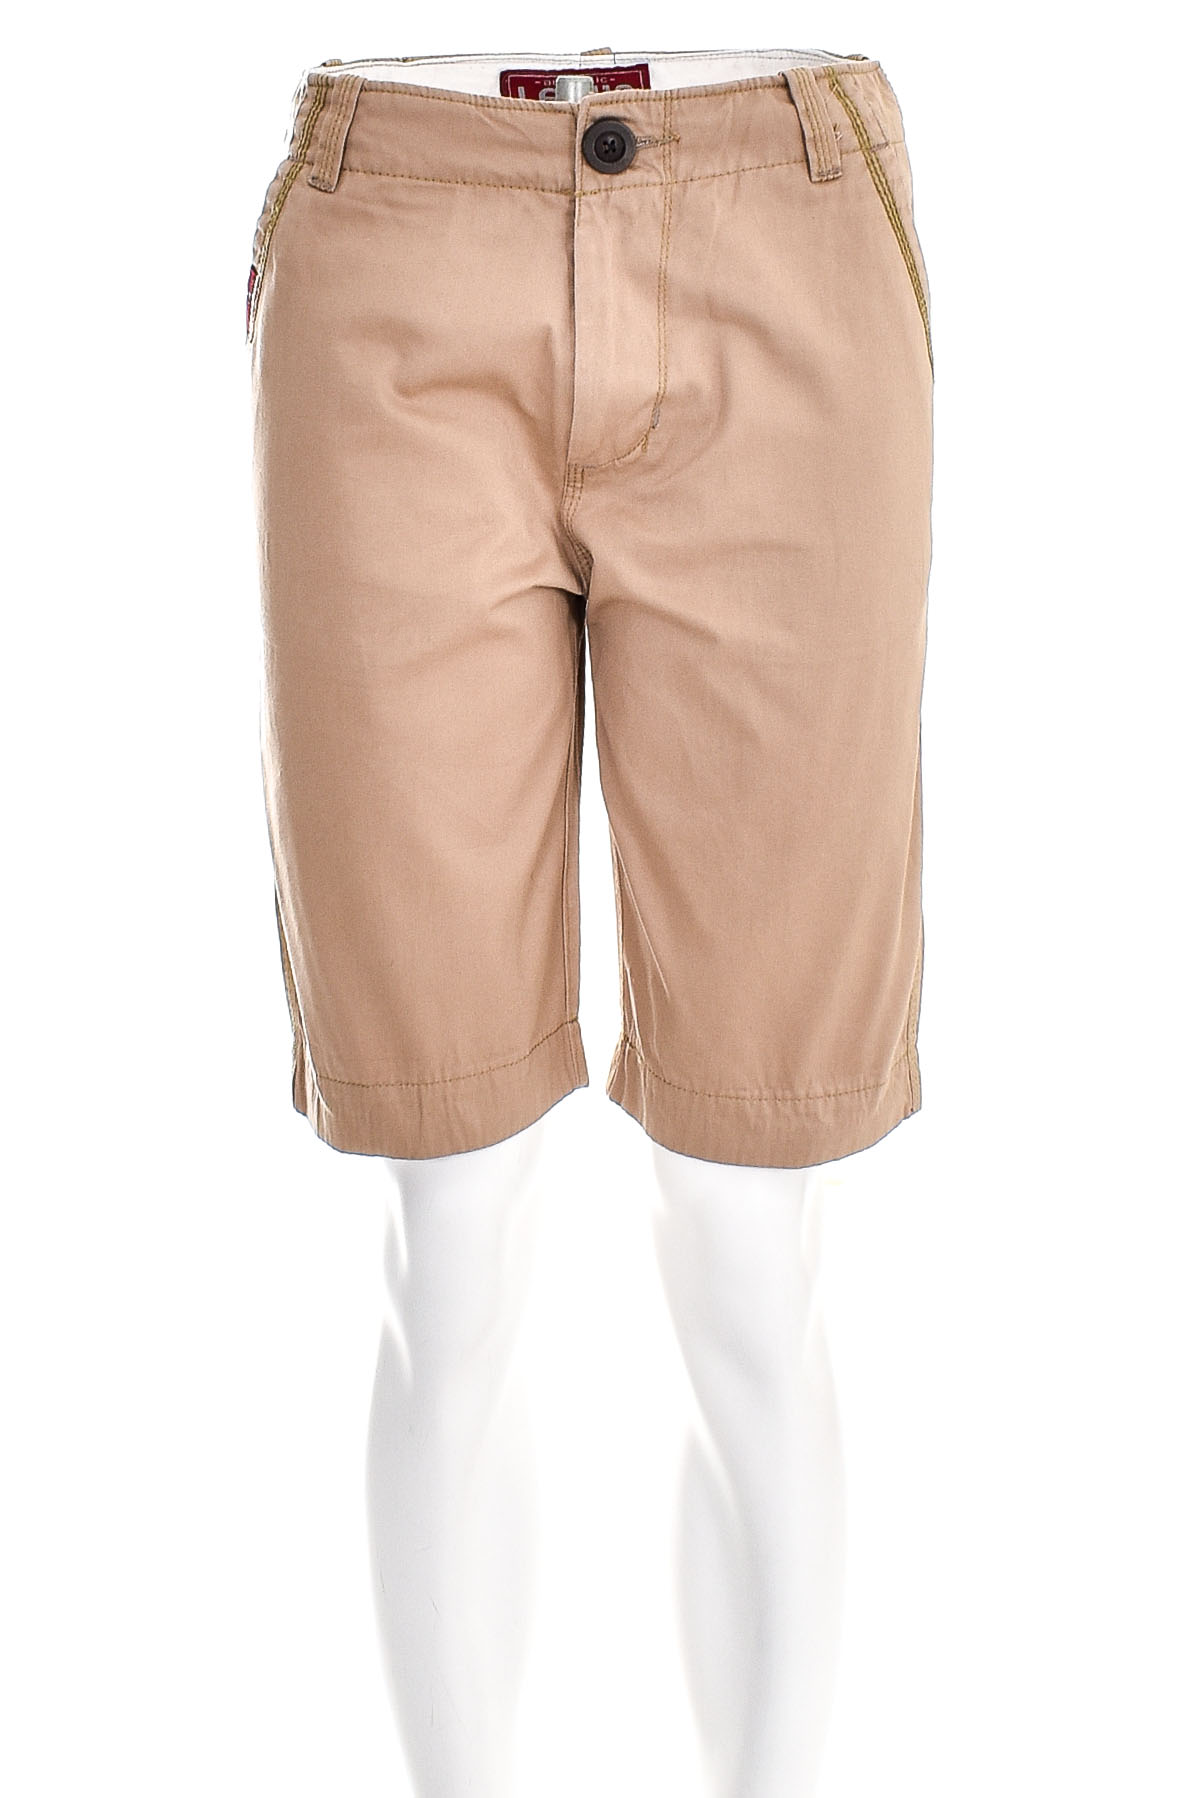 Men's shorts - LEVI'S - 0